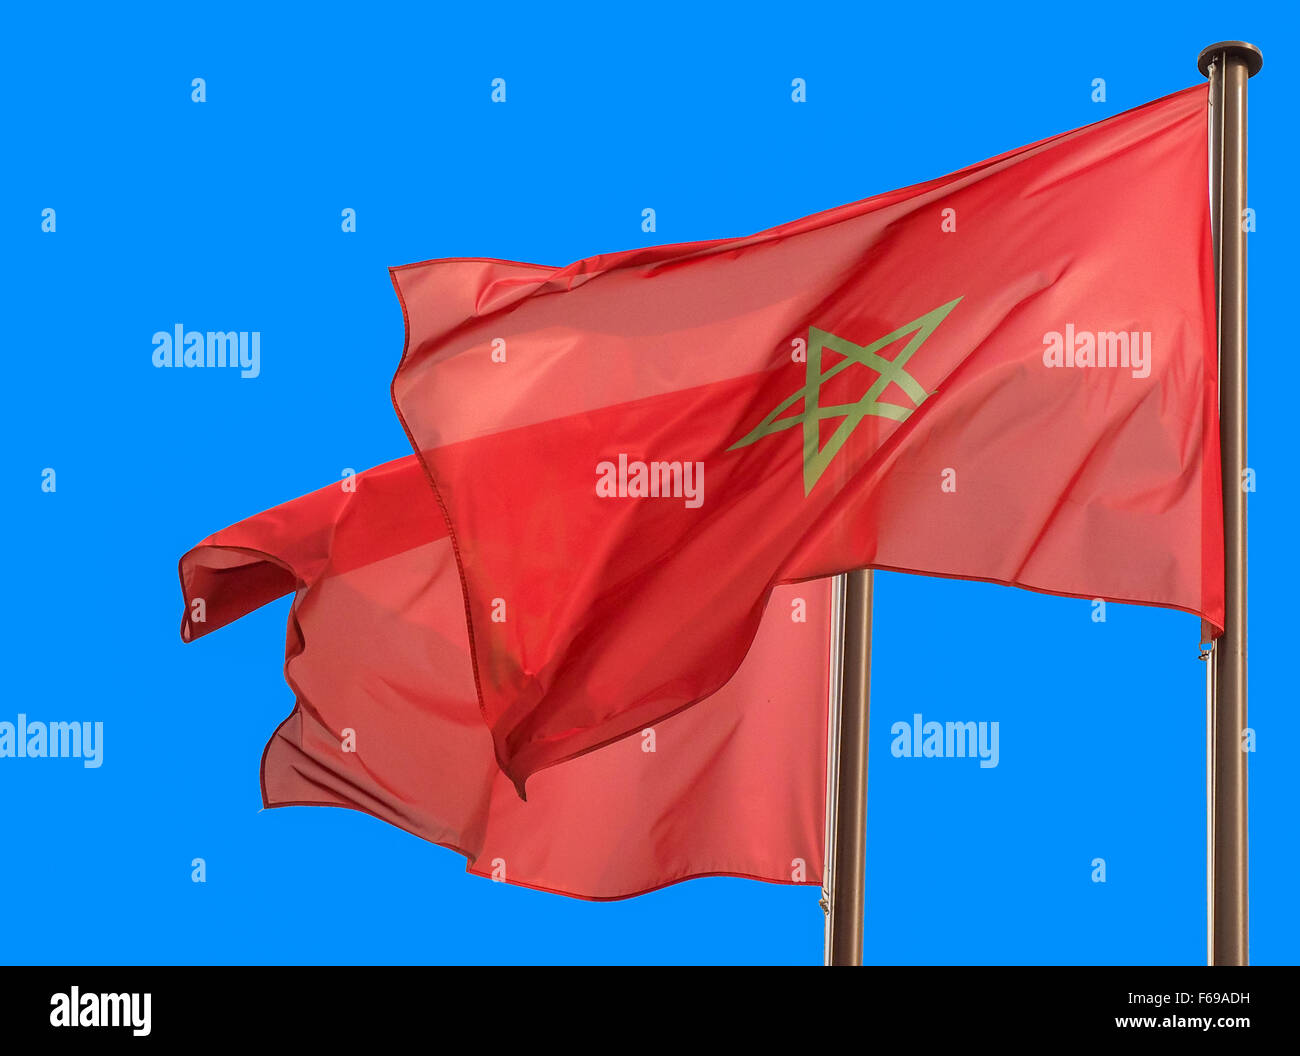 Marruecos Dos banderas ondeando en el cielo azul, copia espacio en el lado izquierdo Foto de stock